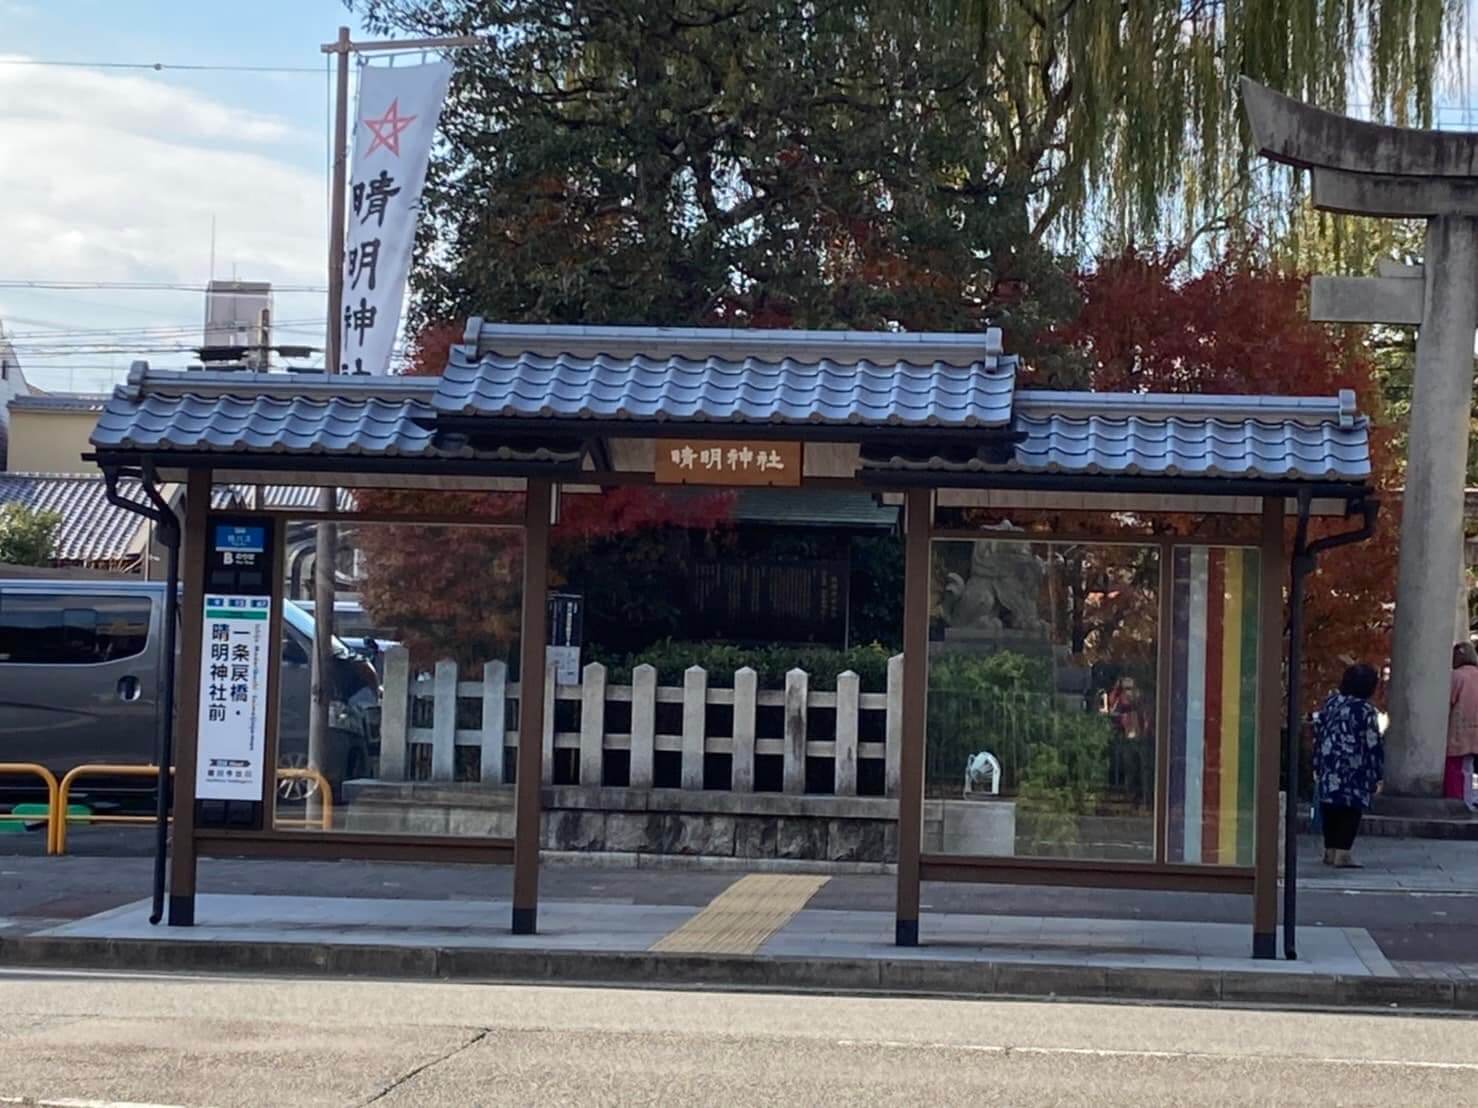 晴明神社前のバス停を撮影した写真